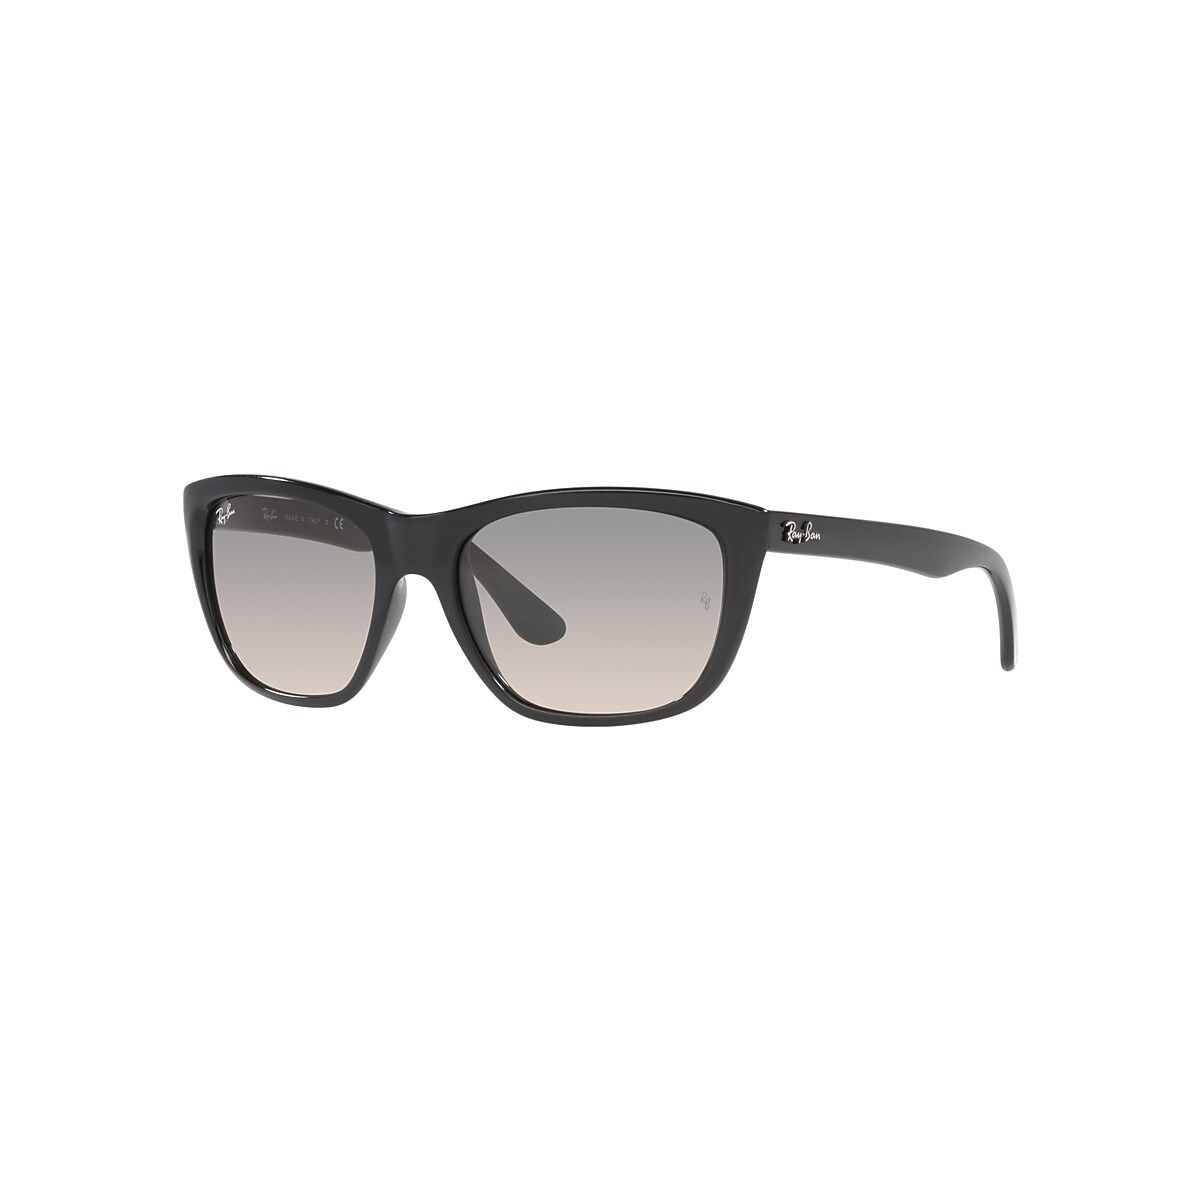 Les lunettes de soleil RB4154 en Noir et Gris - RB4154 | Ray-Ban 